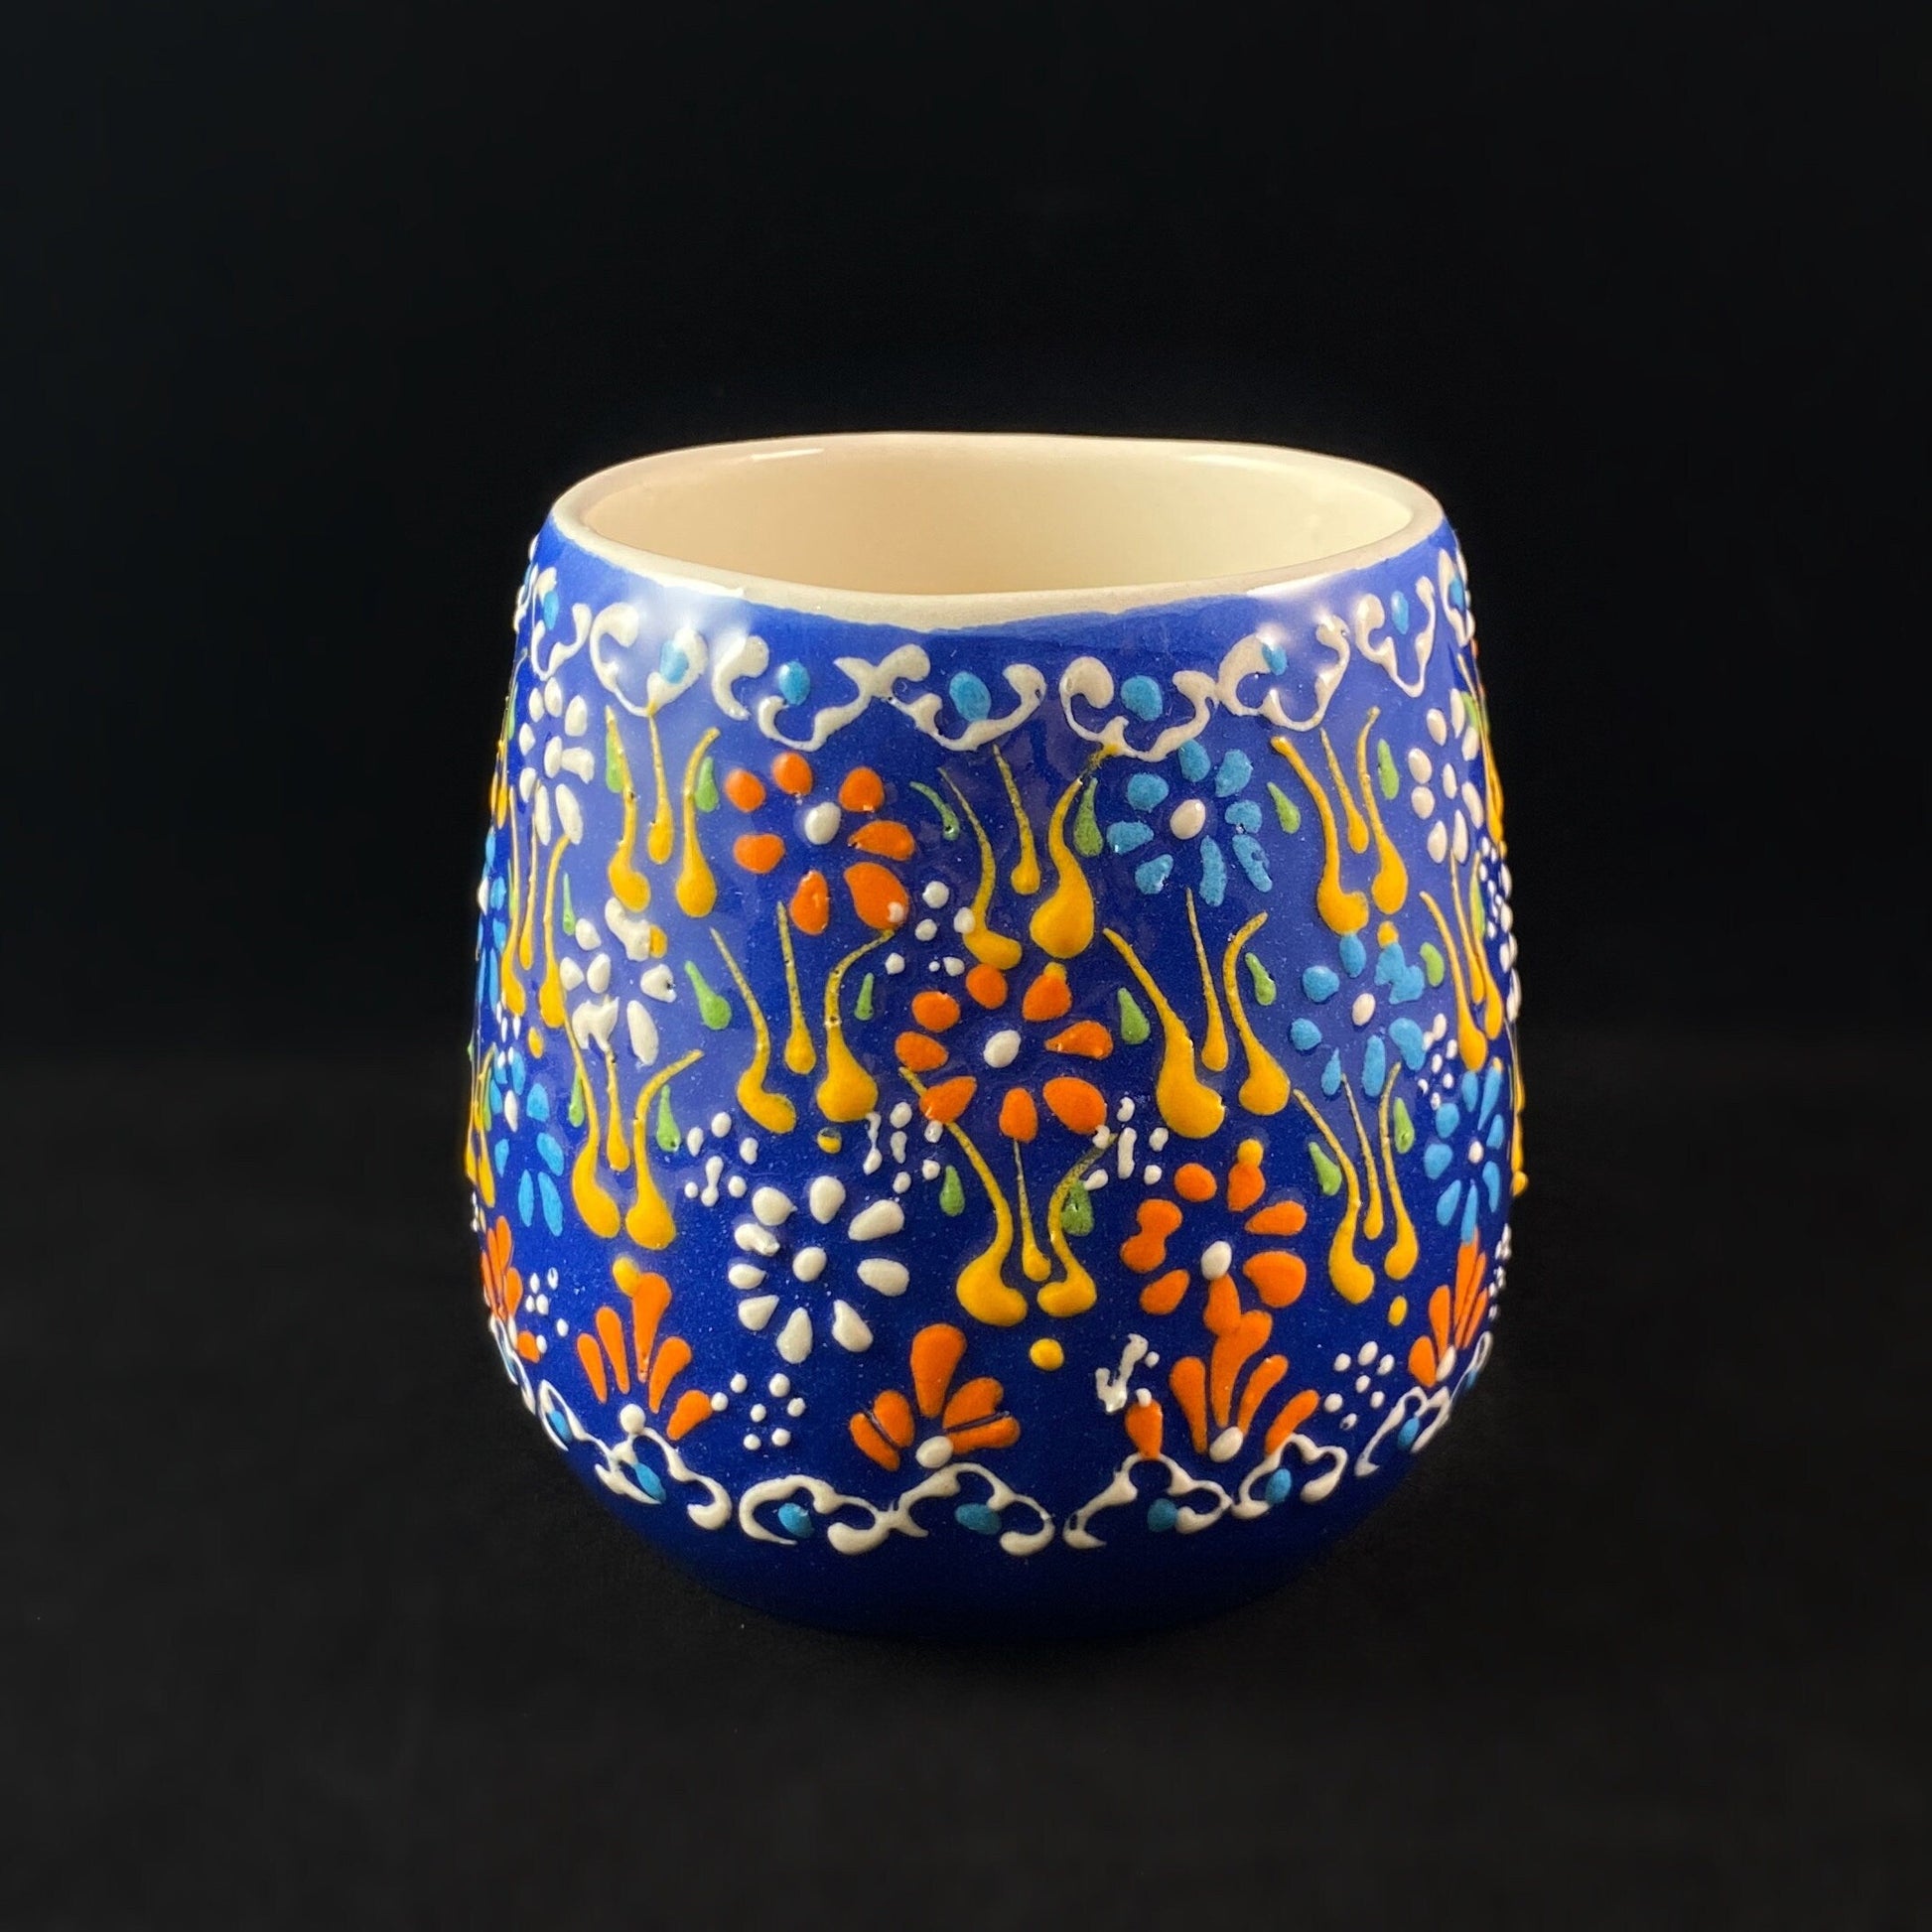 Handmade Mug, Functional and Decorative Turkish Pottery, Cottagecore Style, Blue